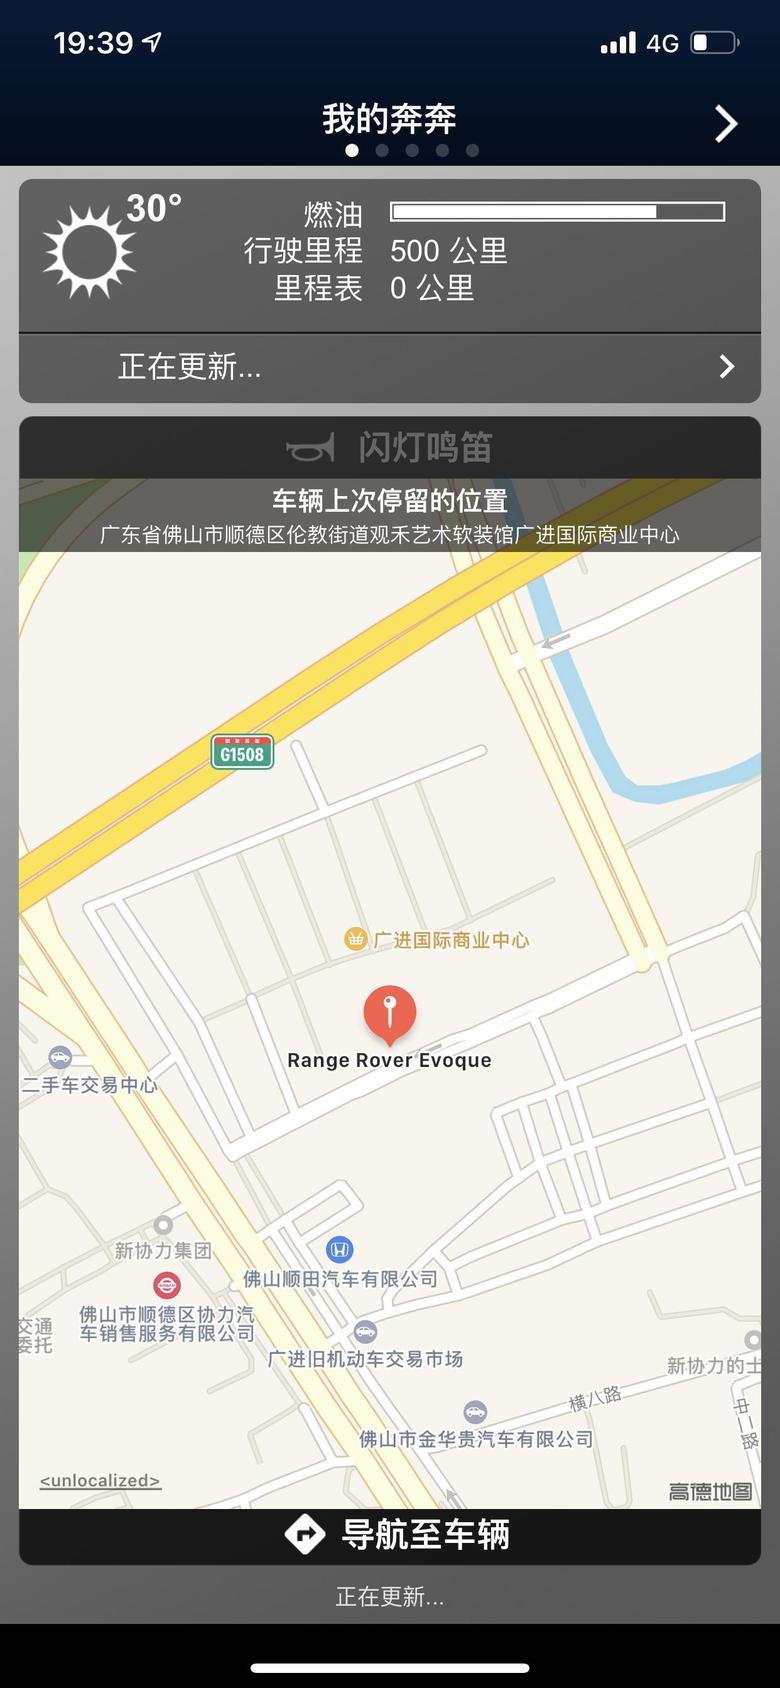 揽胜极光 刚杭州这边提的路虎极光，刚刚注册了remote怎么显示在广州